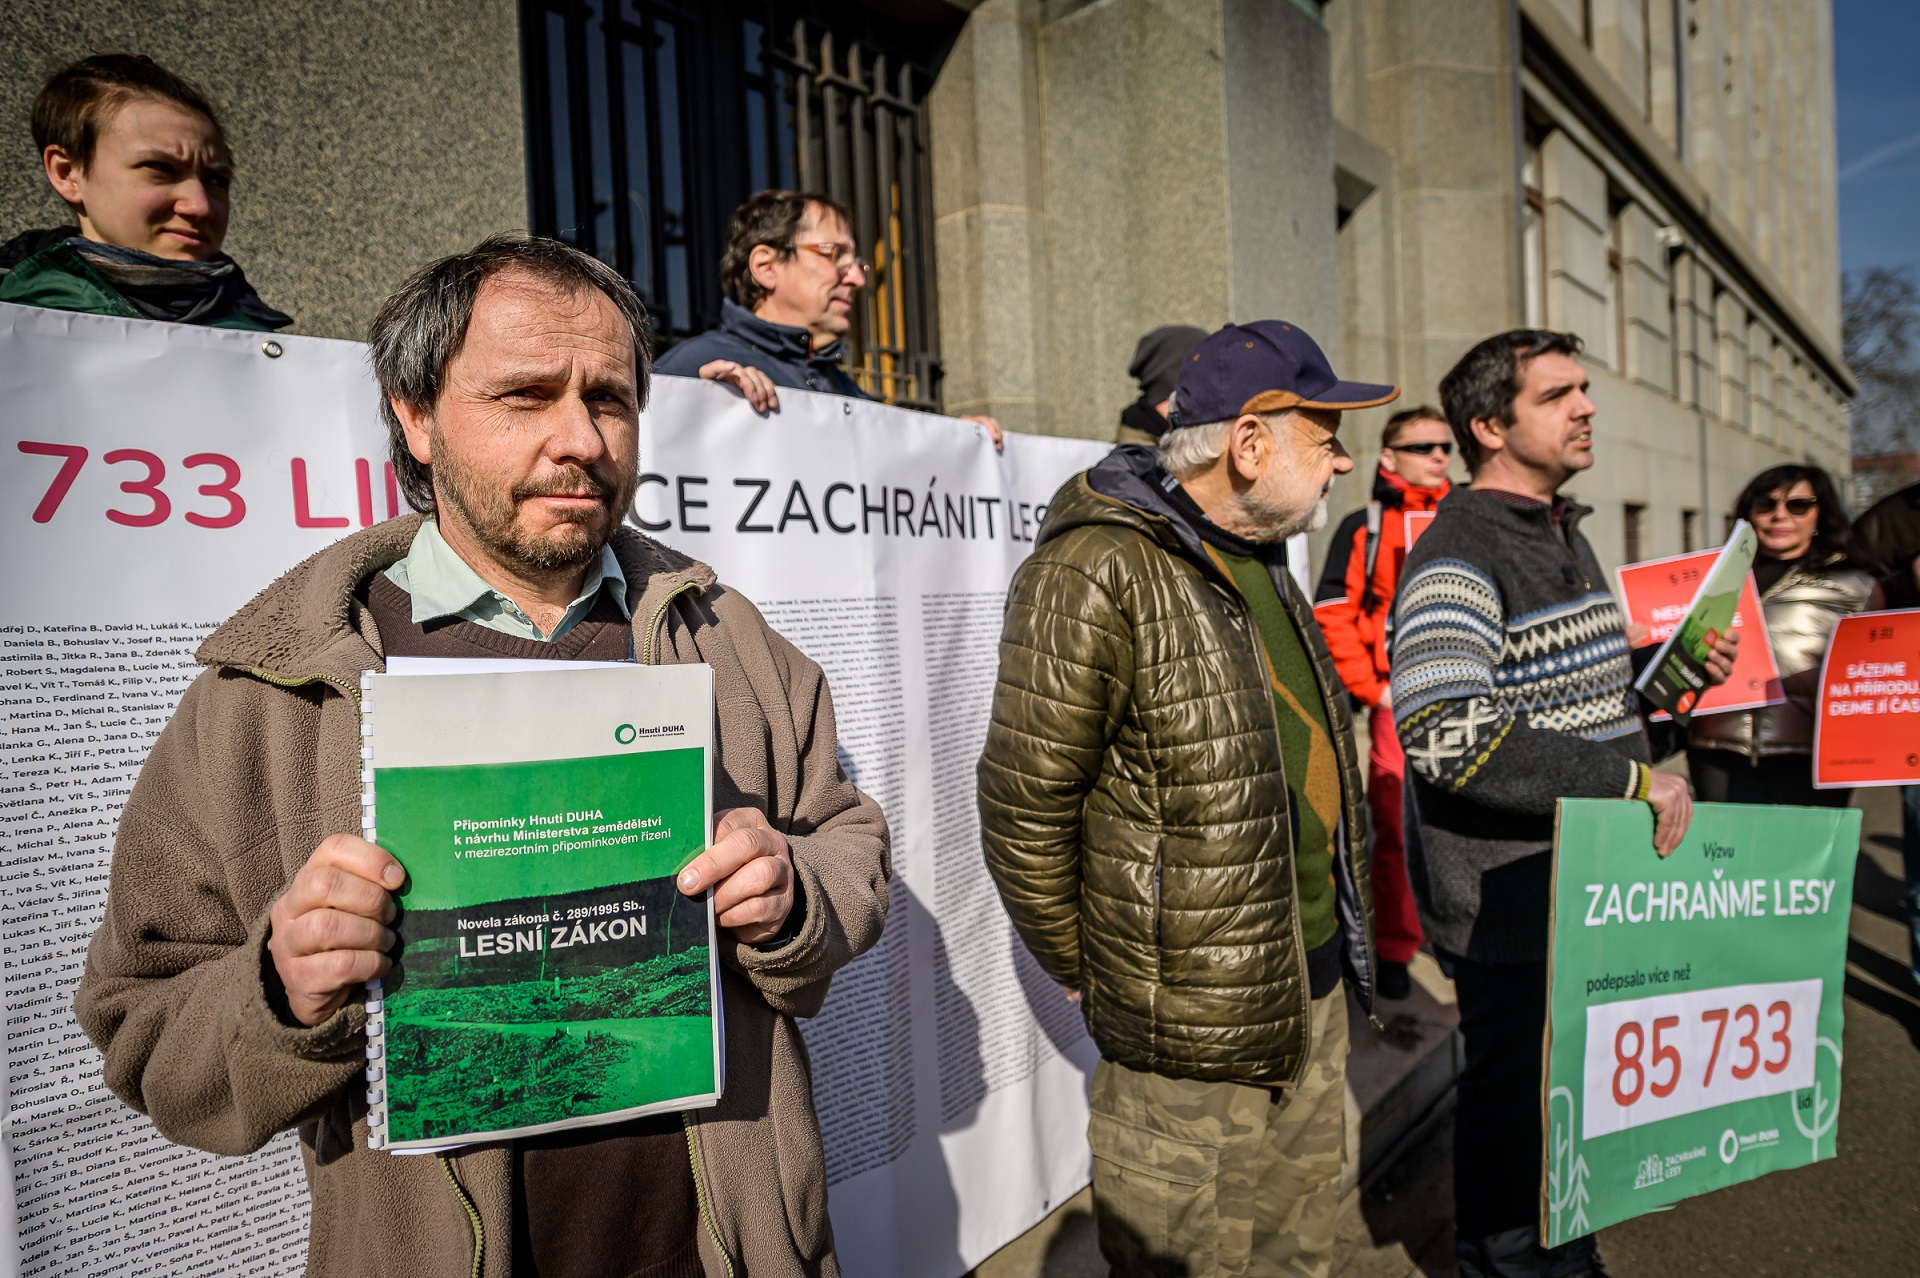 85 733 signatářů z kampaně Zachraňme lesy žádá ministerstvo o lepší lesní zákon. Foto: Petr Zewlak Vrabec